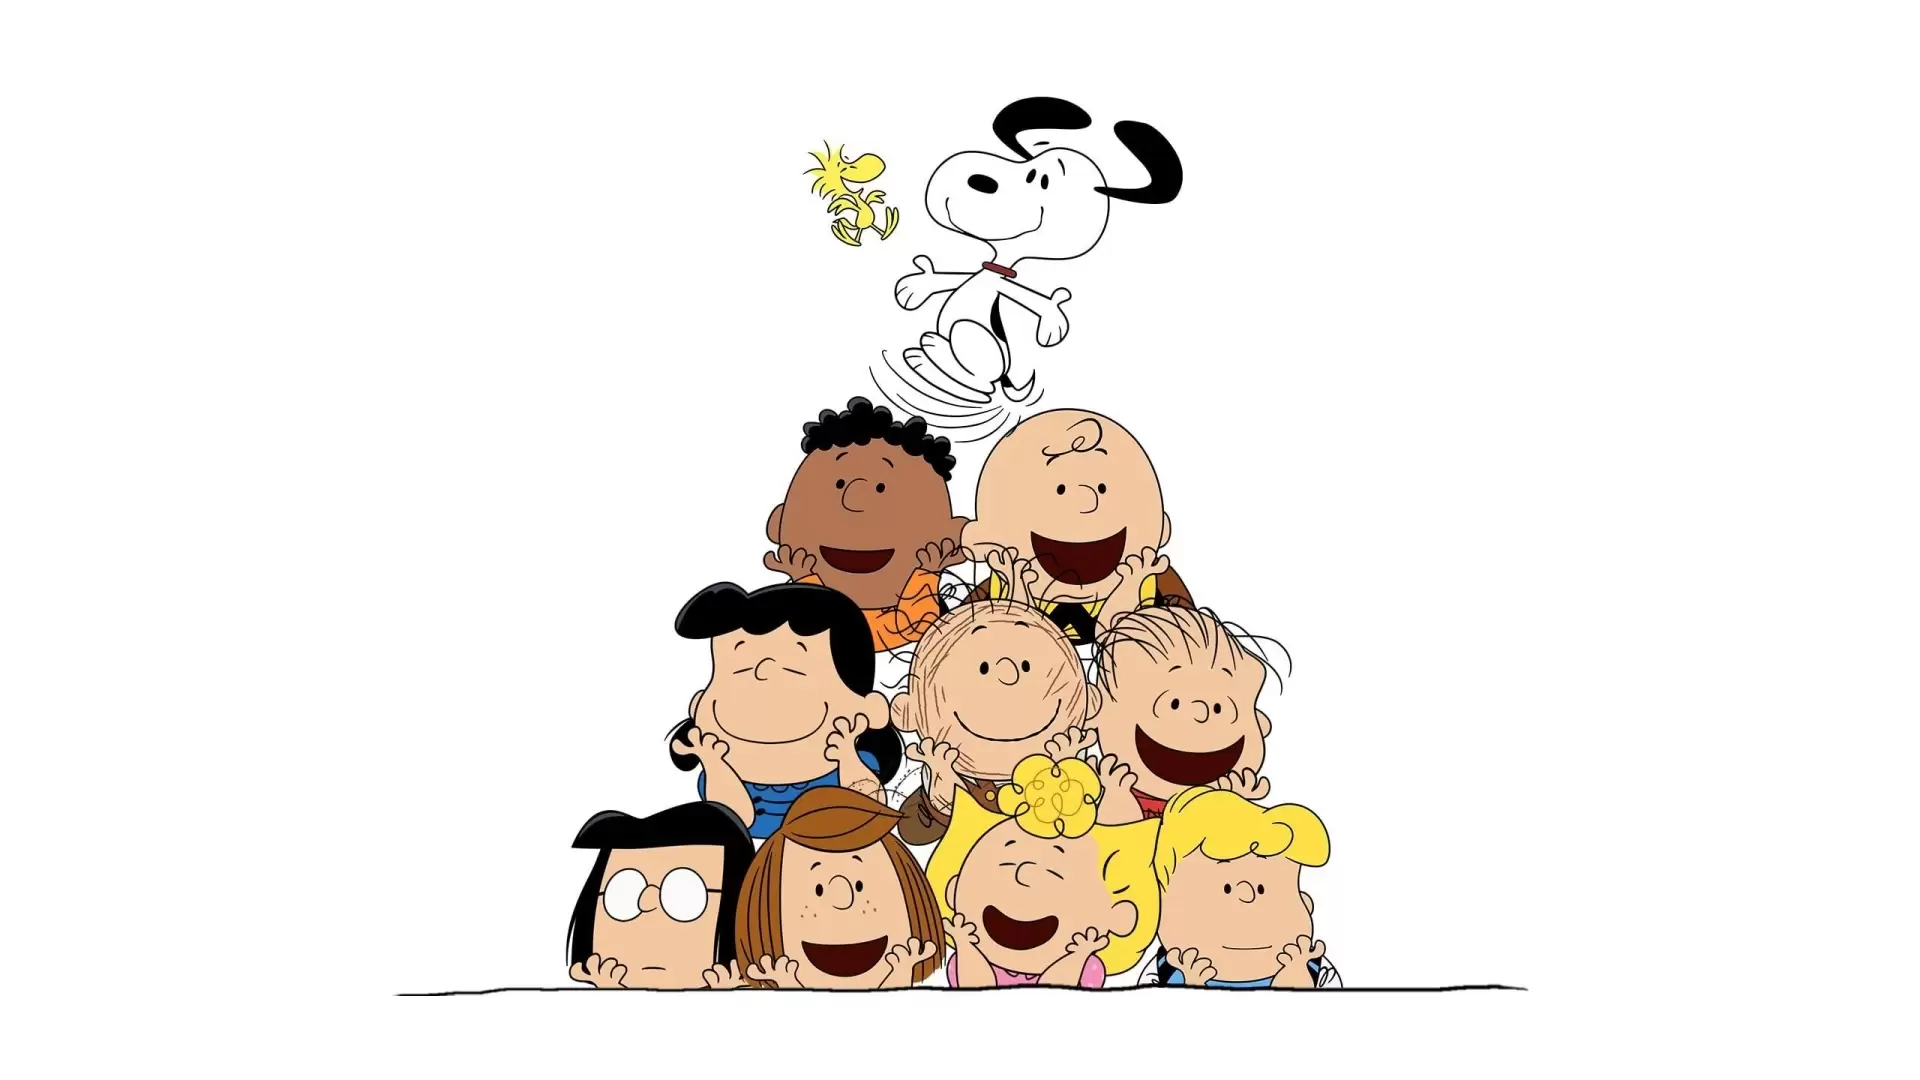 دانلود انیمیشن The Snoopy Show 2021 (نمایش اسنوپی)